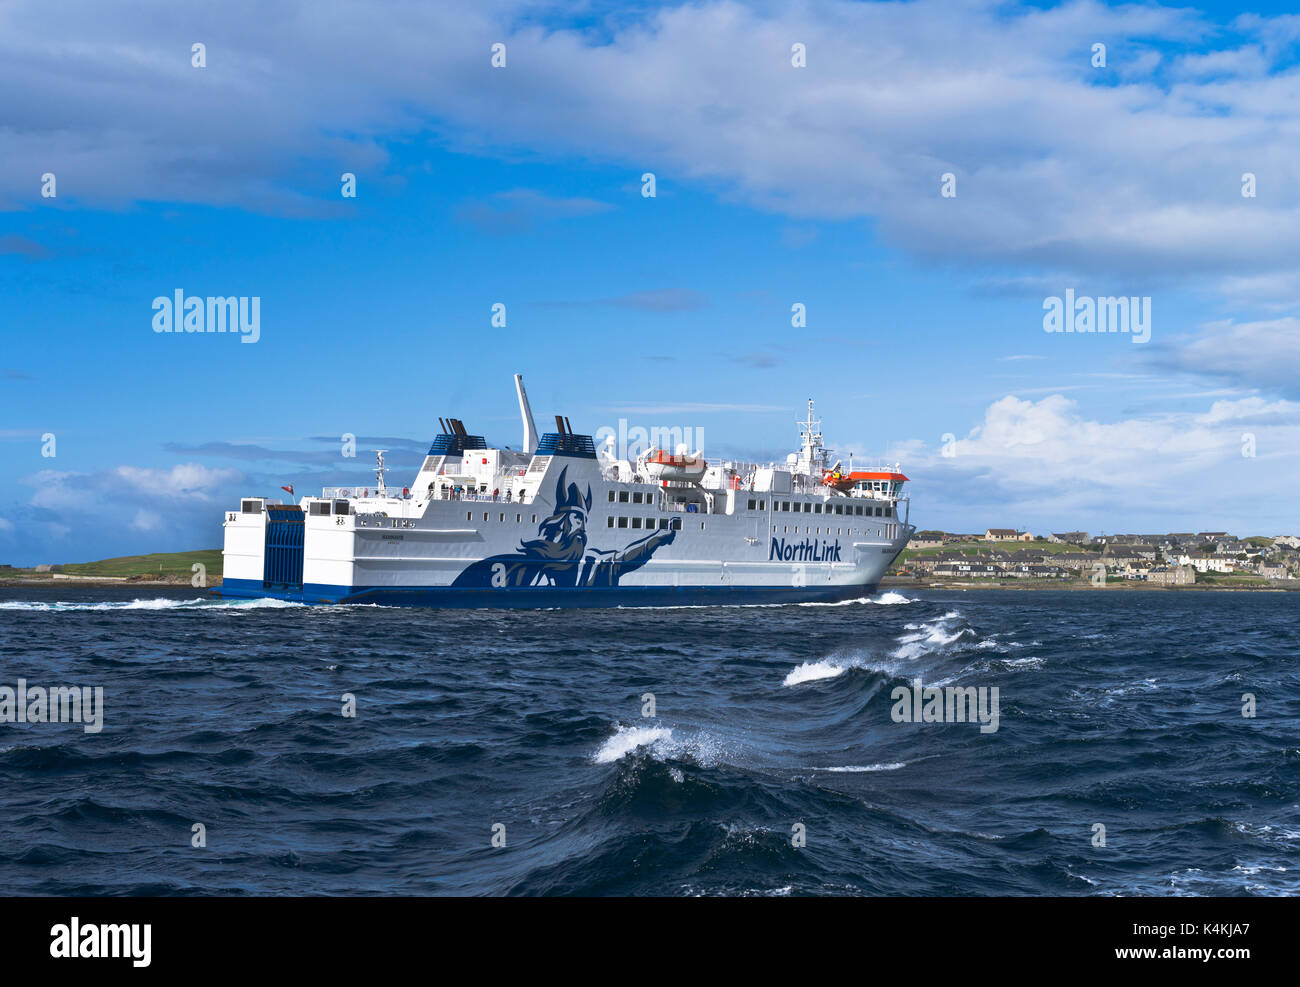 Dh MV Hamnavoe écossais ORCADES NORTHLINK ferries Stromness ferries arrivant de Serco Ecosse bateau naviguant de ro ro uk Banque D'Images